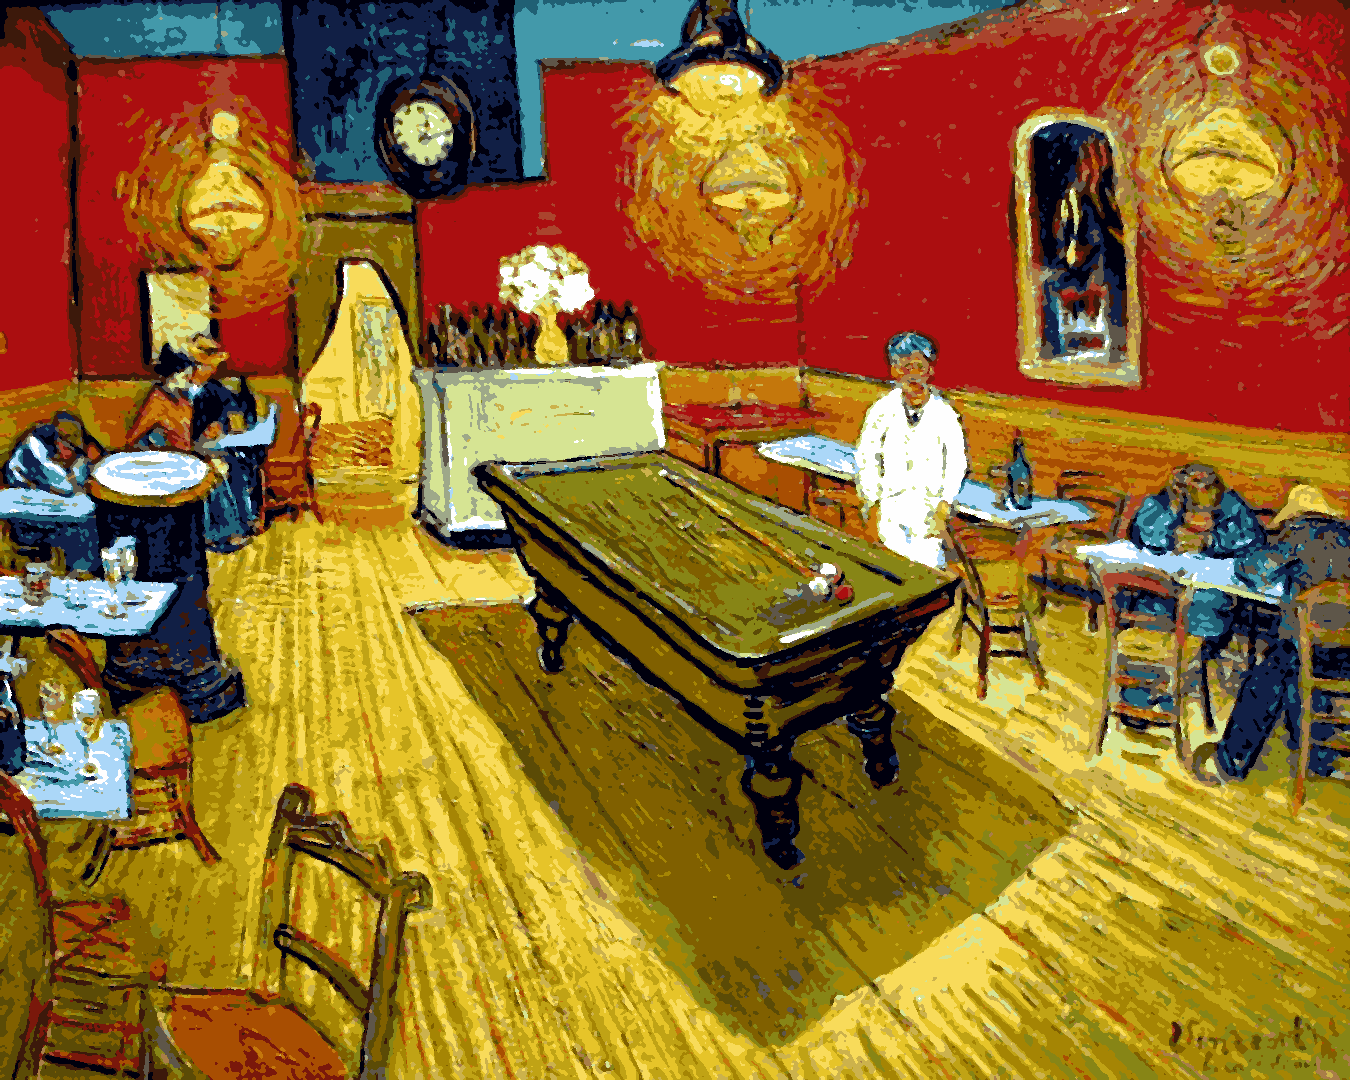 Vincent Van Gogh PD - (149) - The Night Café - Van-Go Paint-By-Number Kit